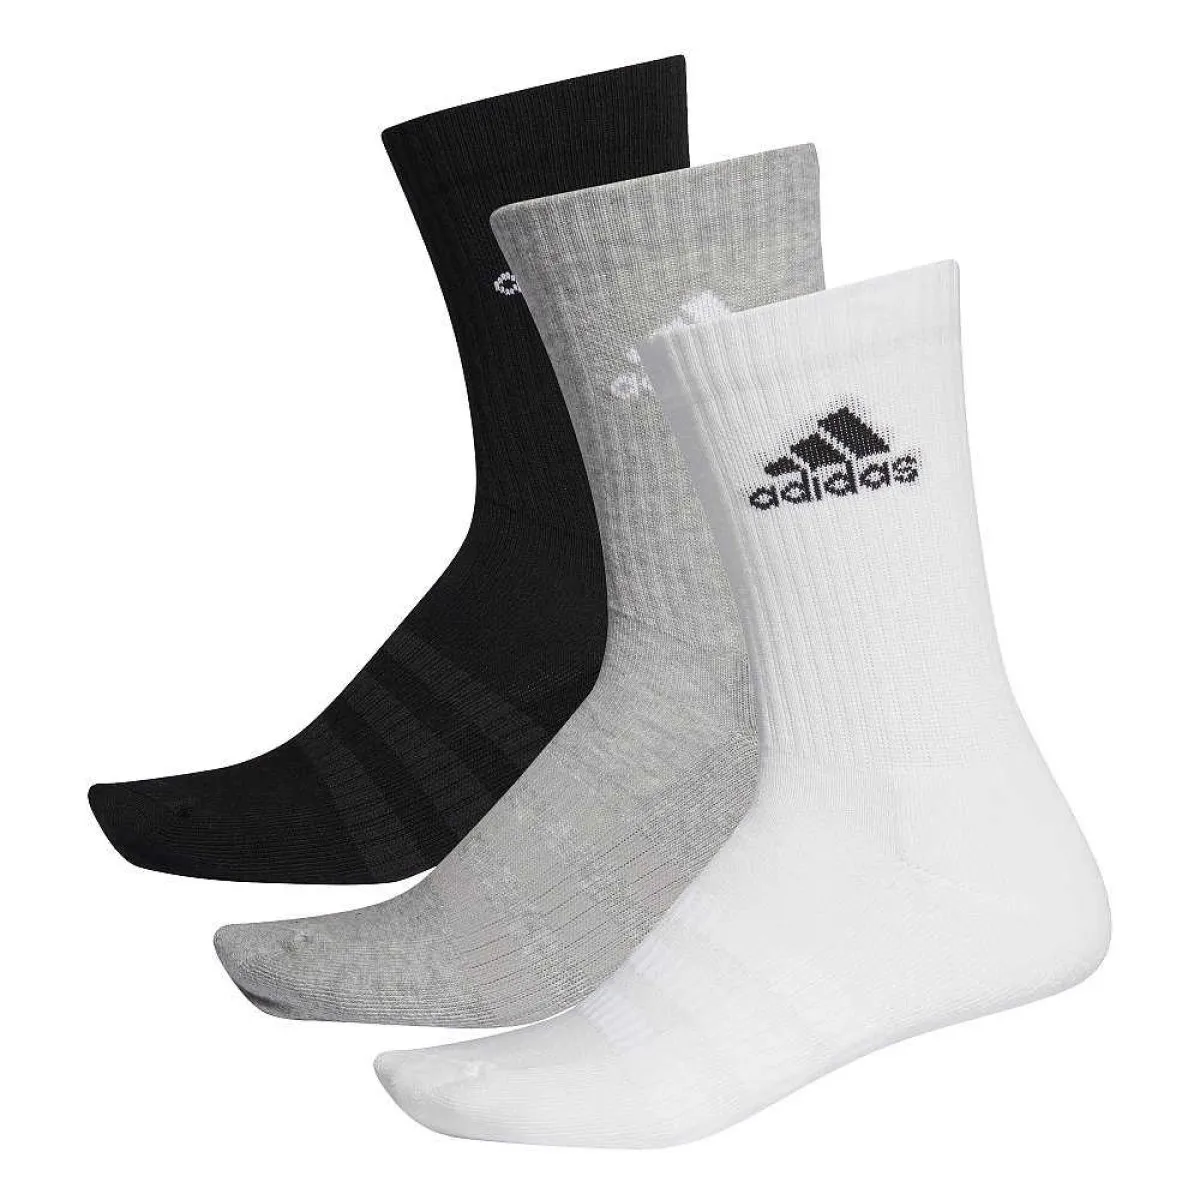 Paquete de 3 calcetines deportivos adidas blanco/gris/negro